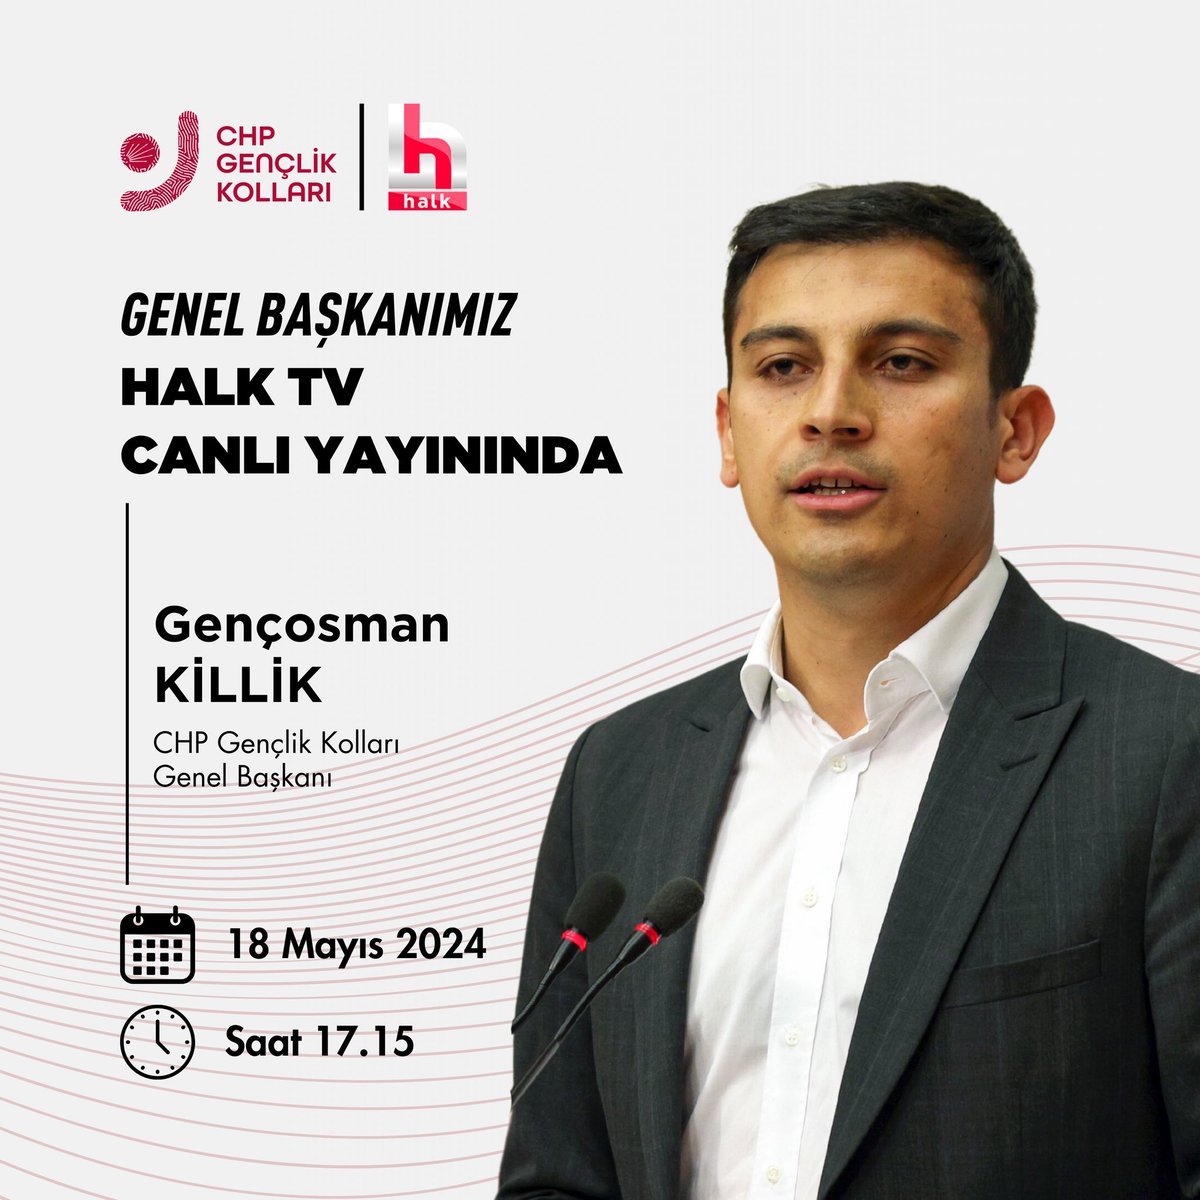 Genel Başkanımız Gençosman Killik (@gencosmankillik) saat 17.15’te Halk TV canlı yayınında olacak.